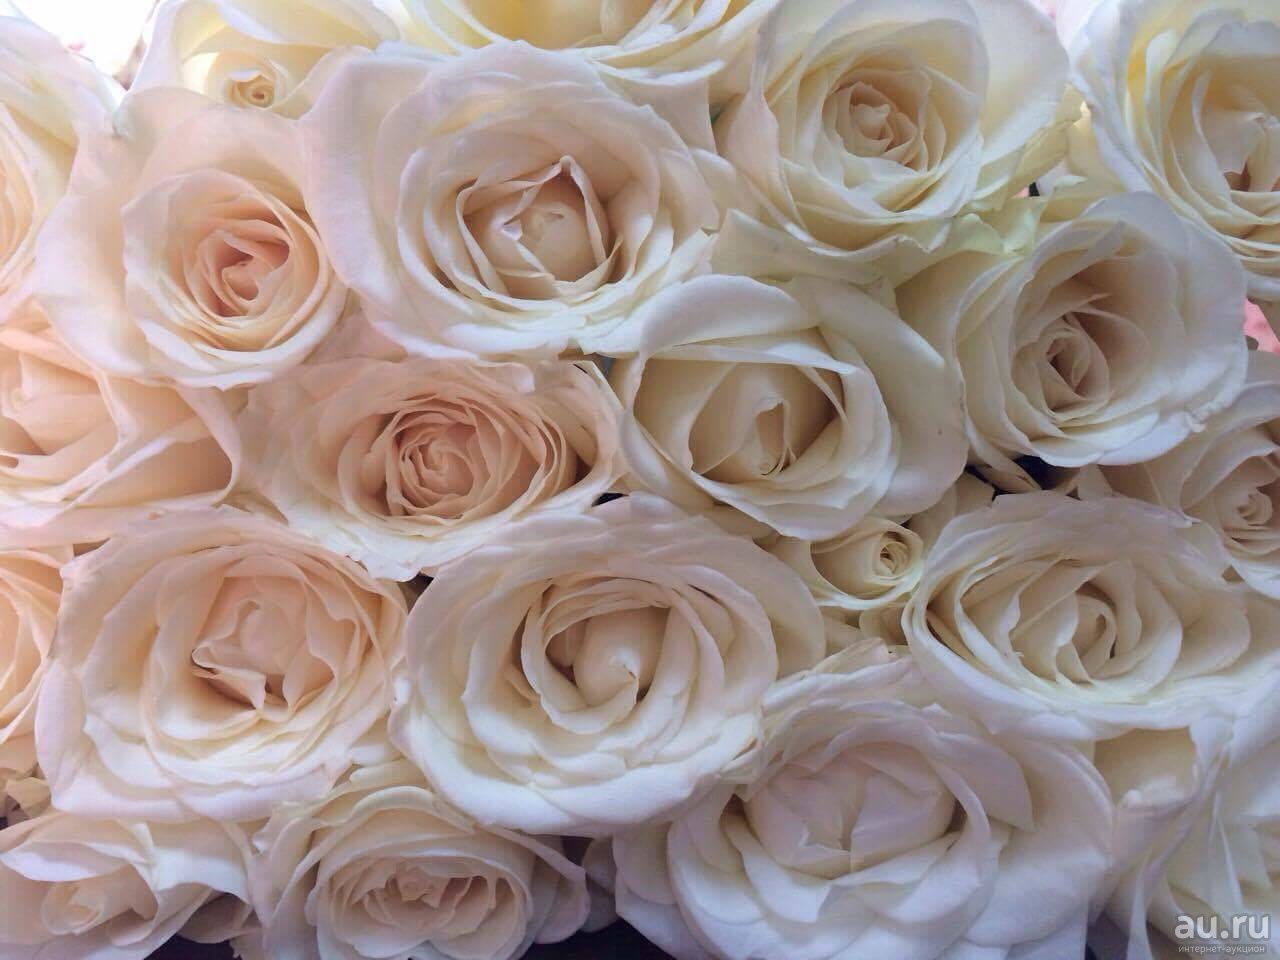 Фото ароматных кремовых роз